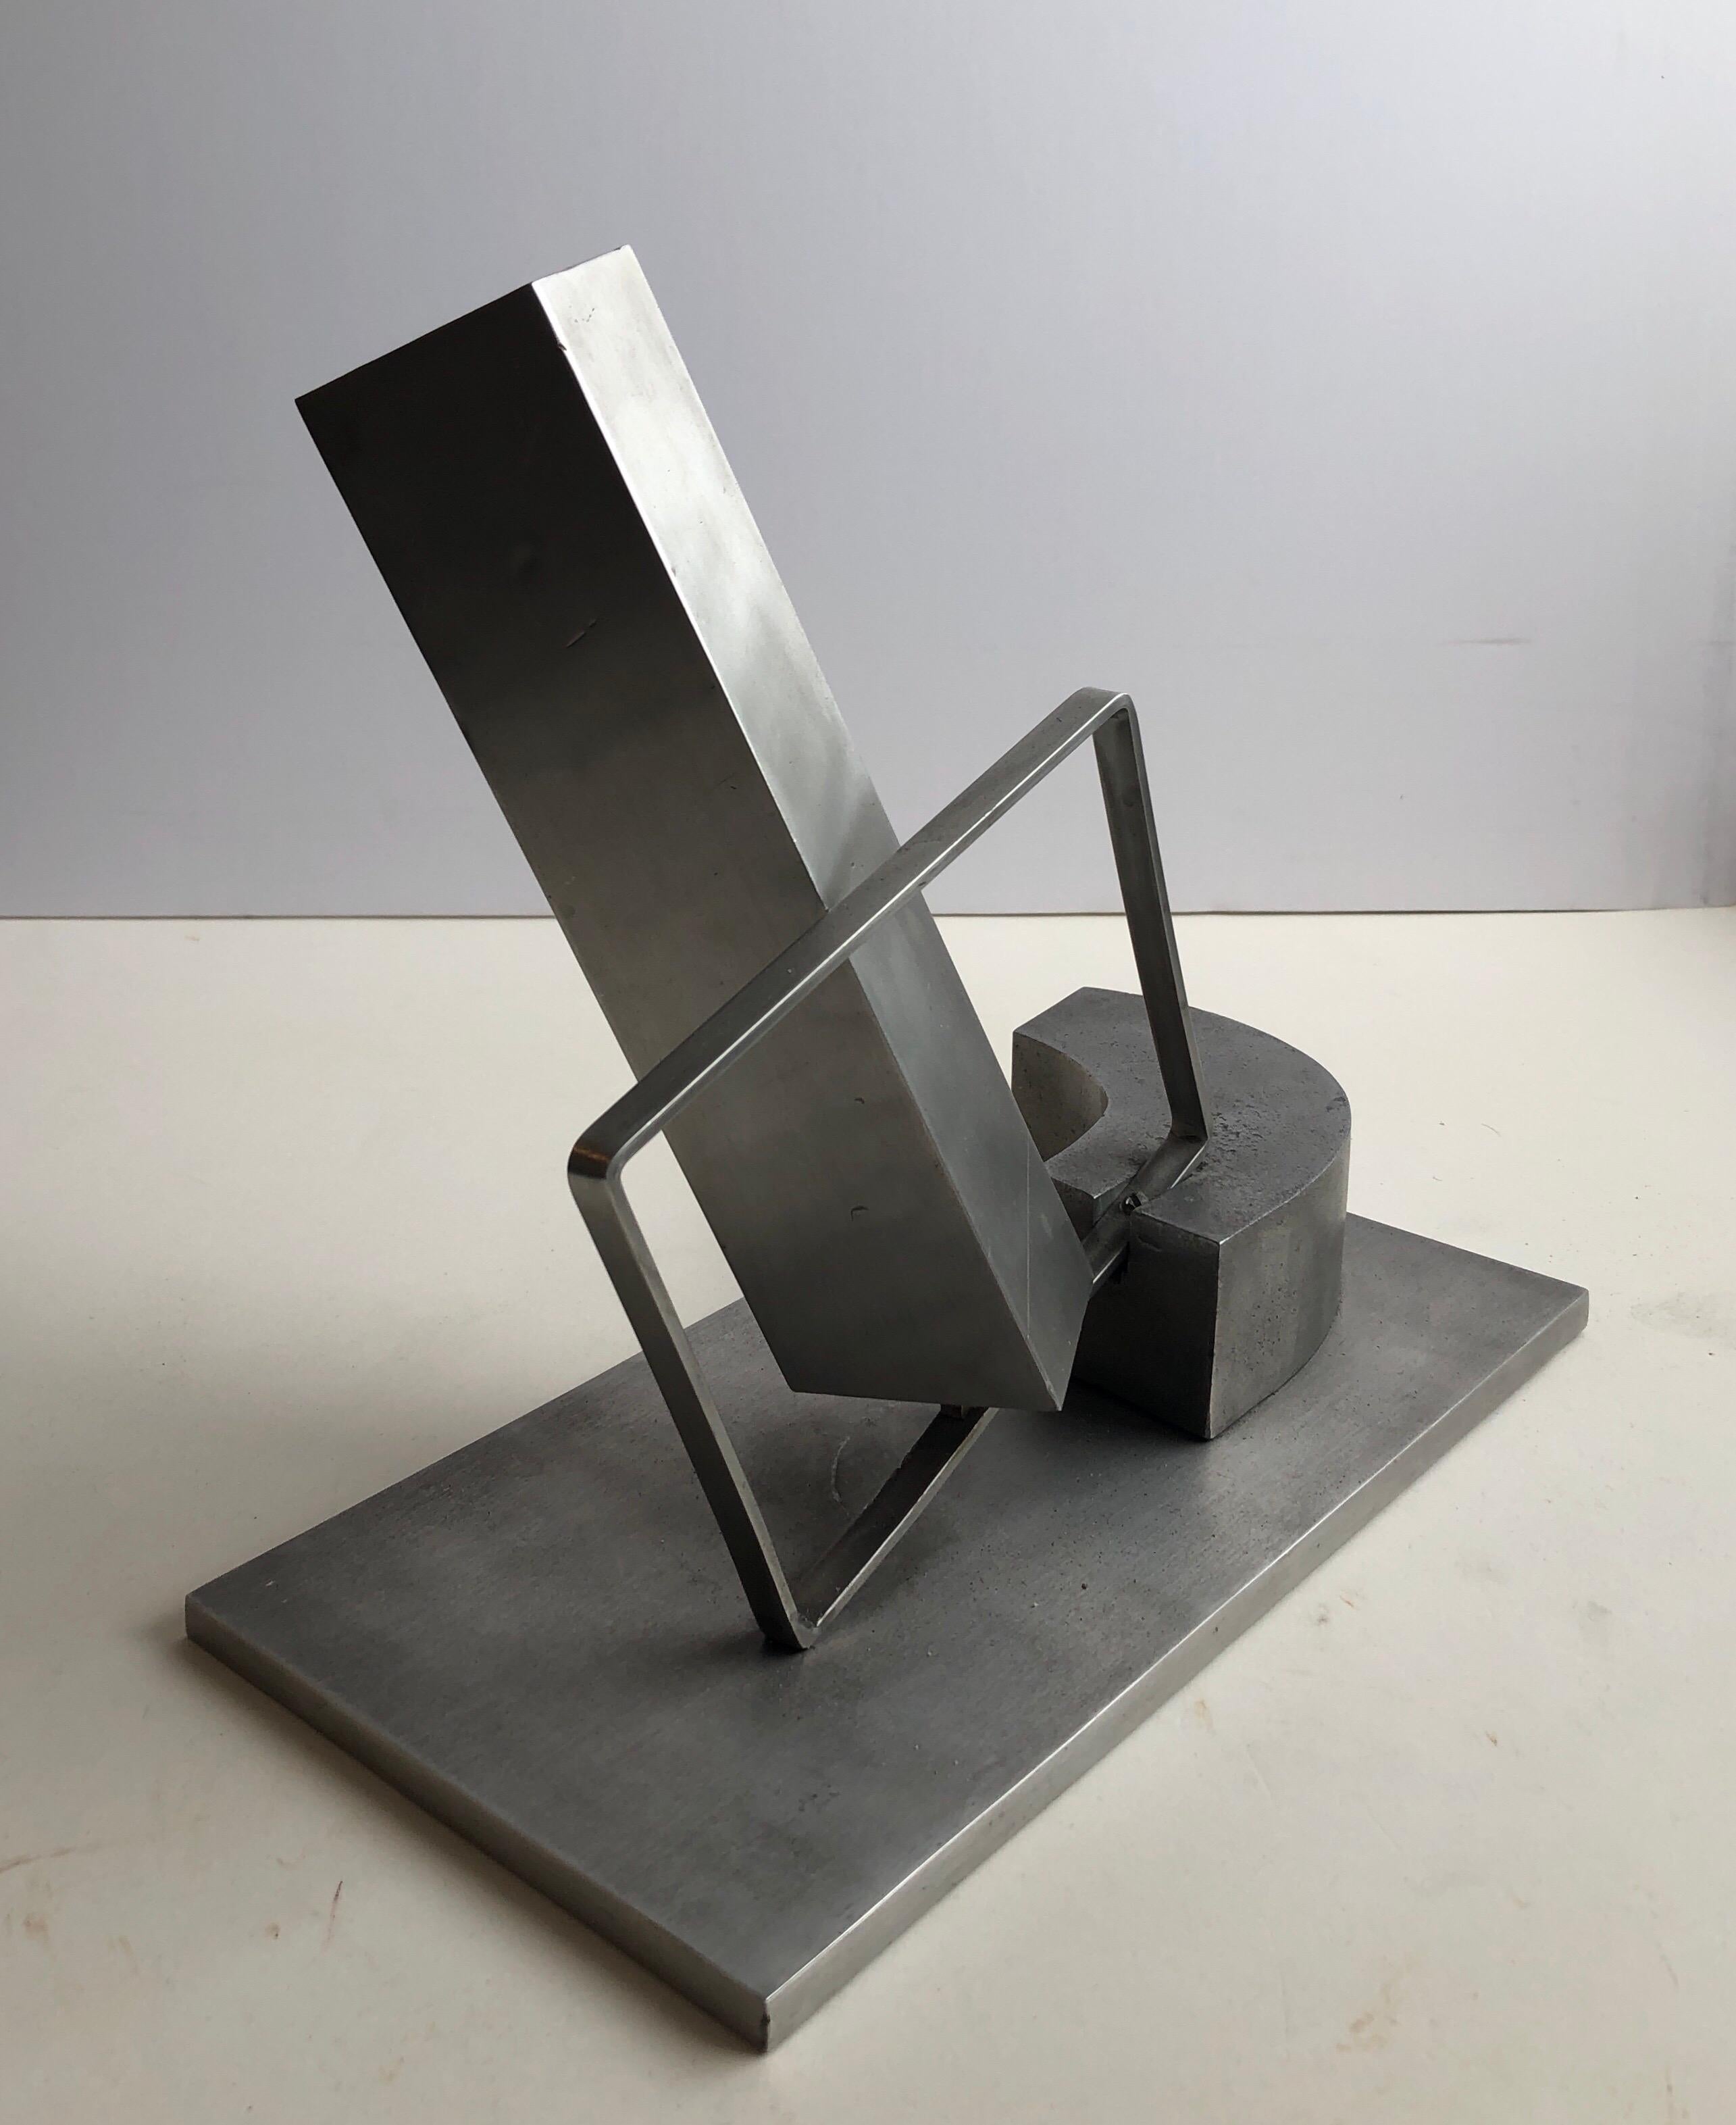 1969 Israeli Abstract Sculpture Stainless Steel Menashe Kadishman Suspension 5